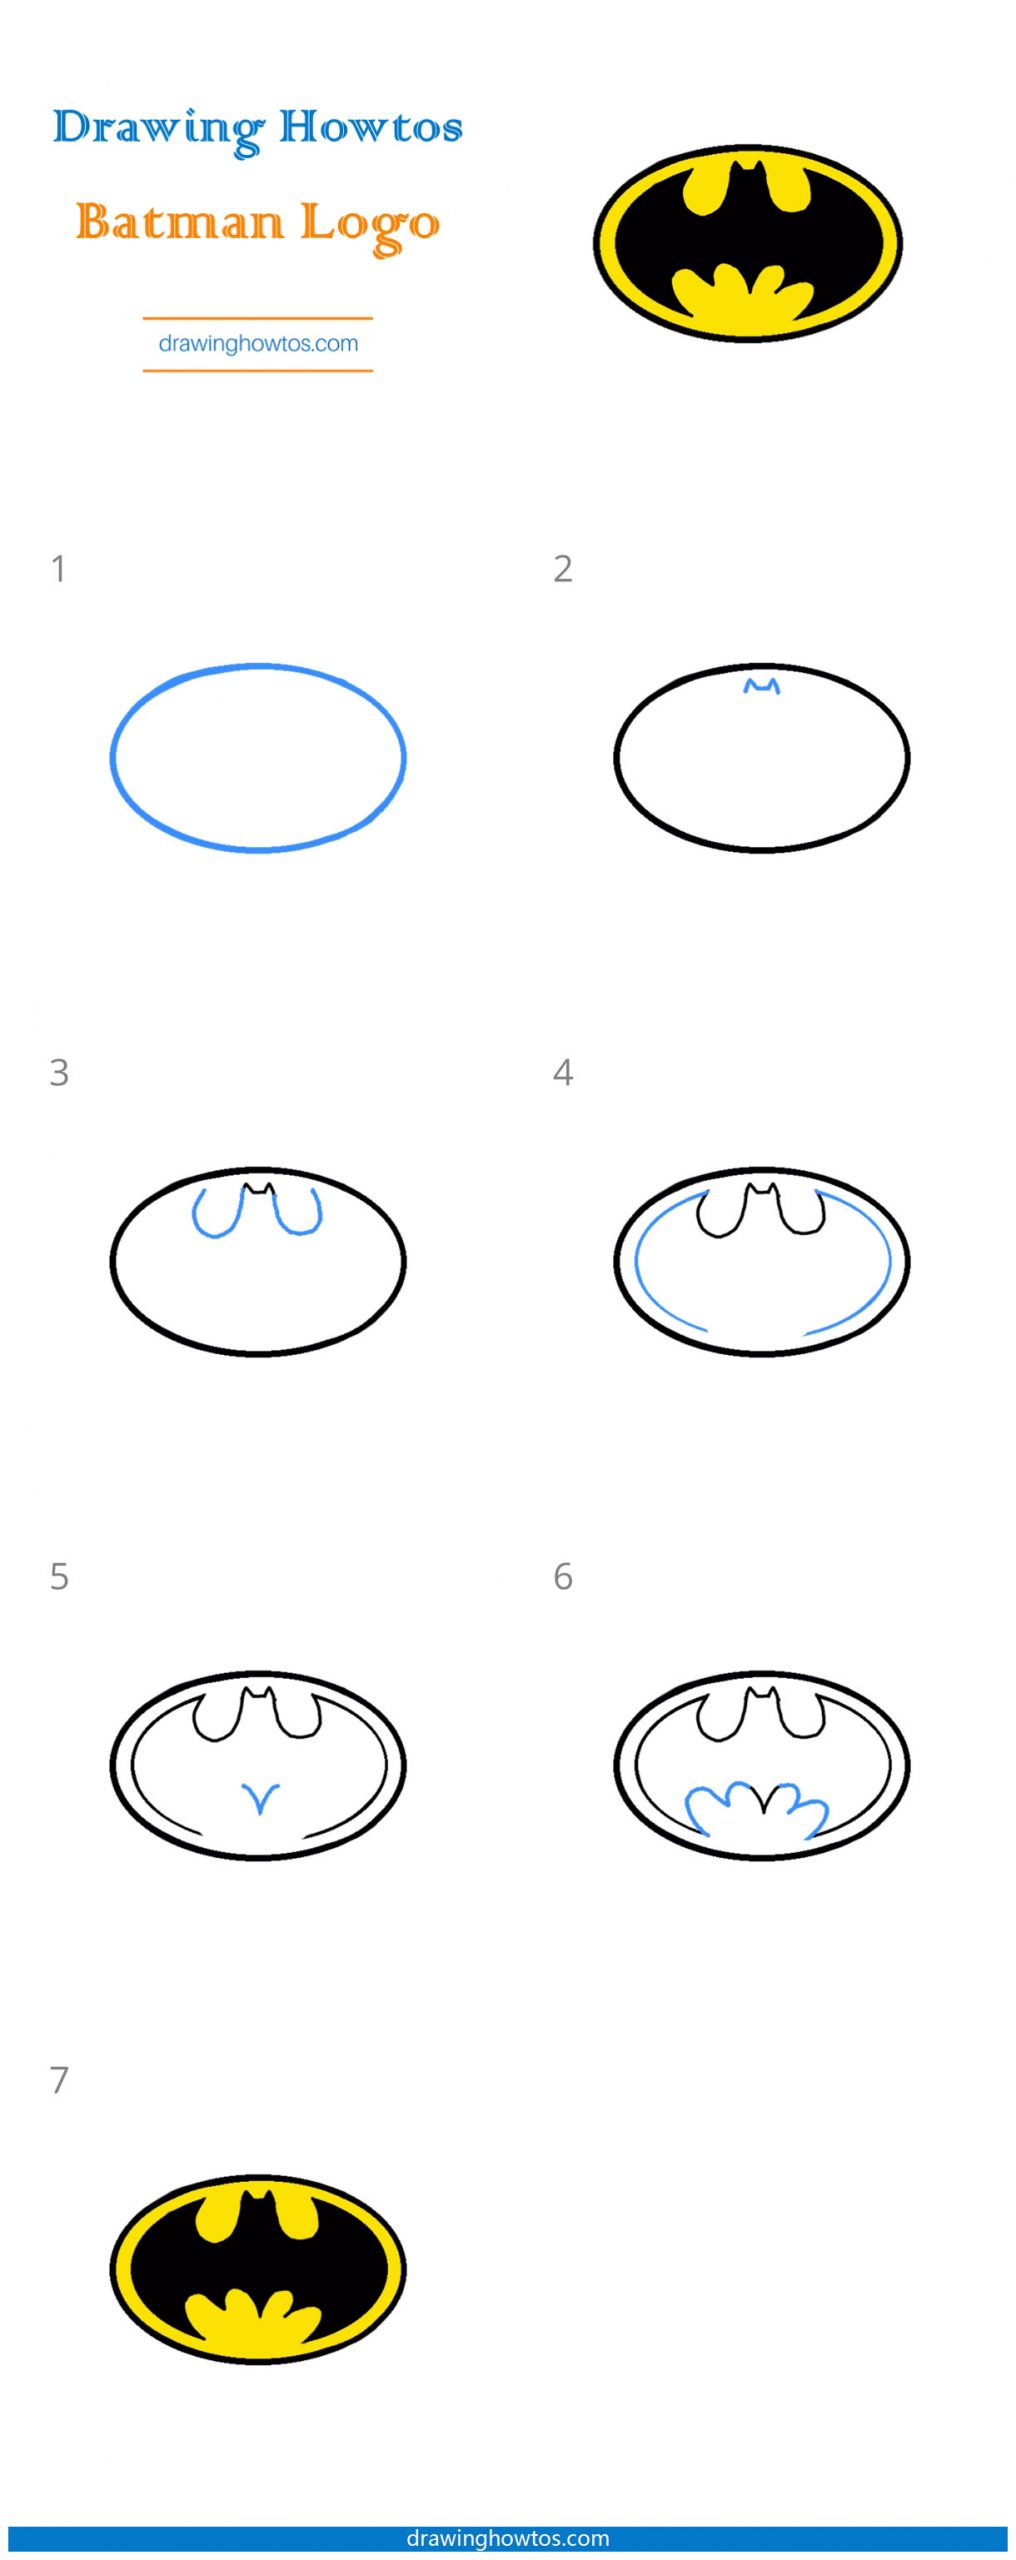 How to Draw Batman Logo Step by Step